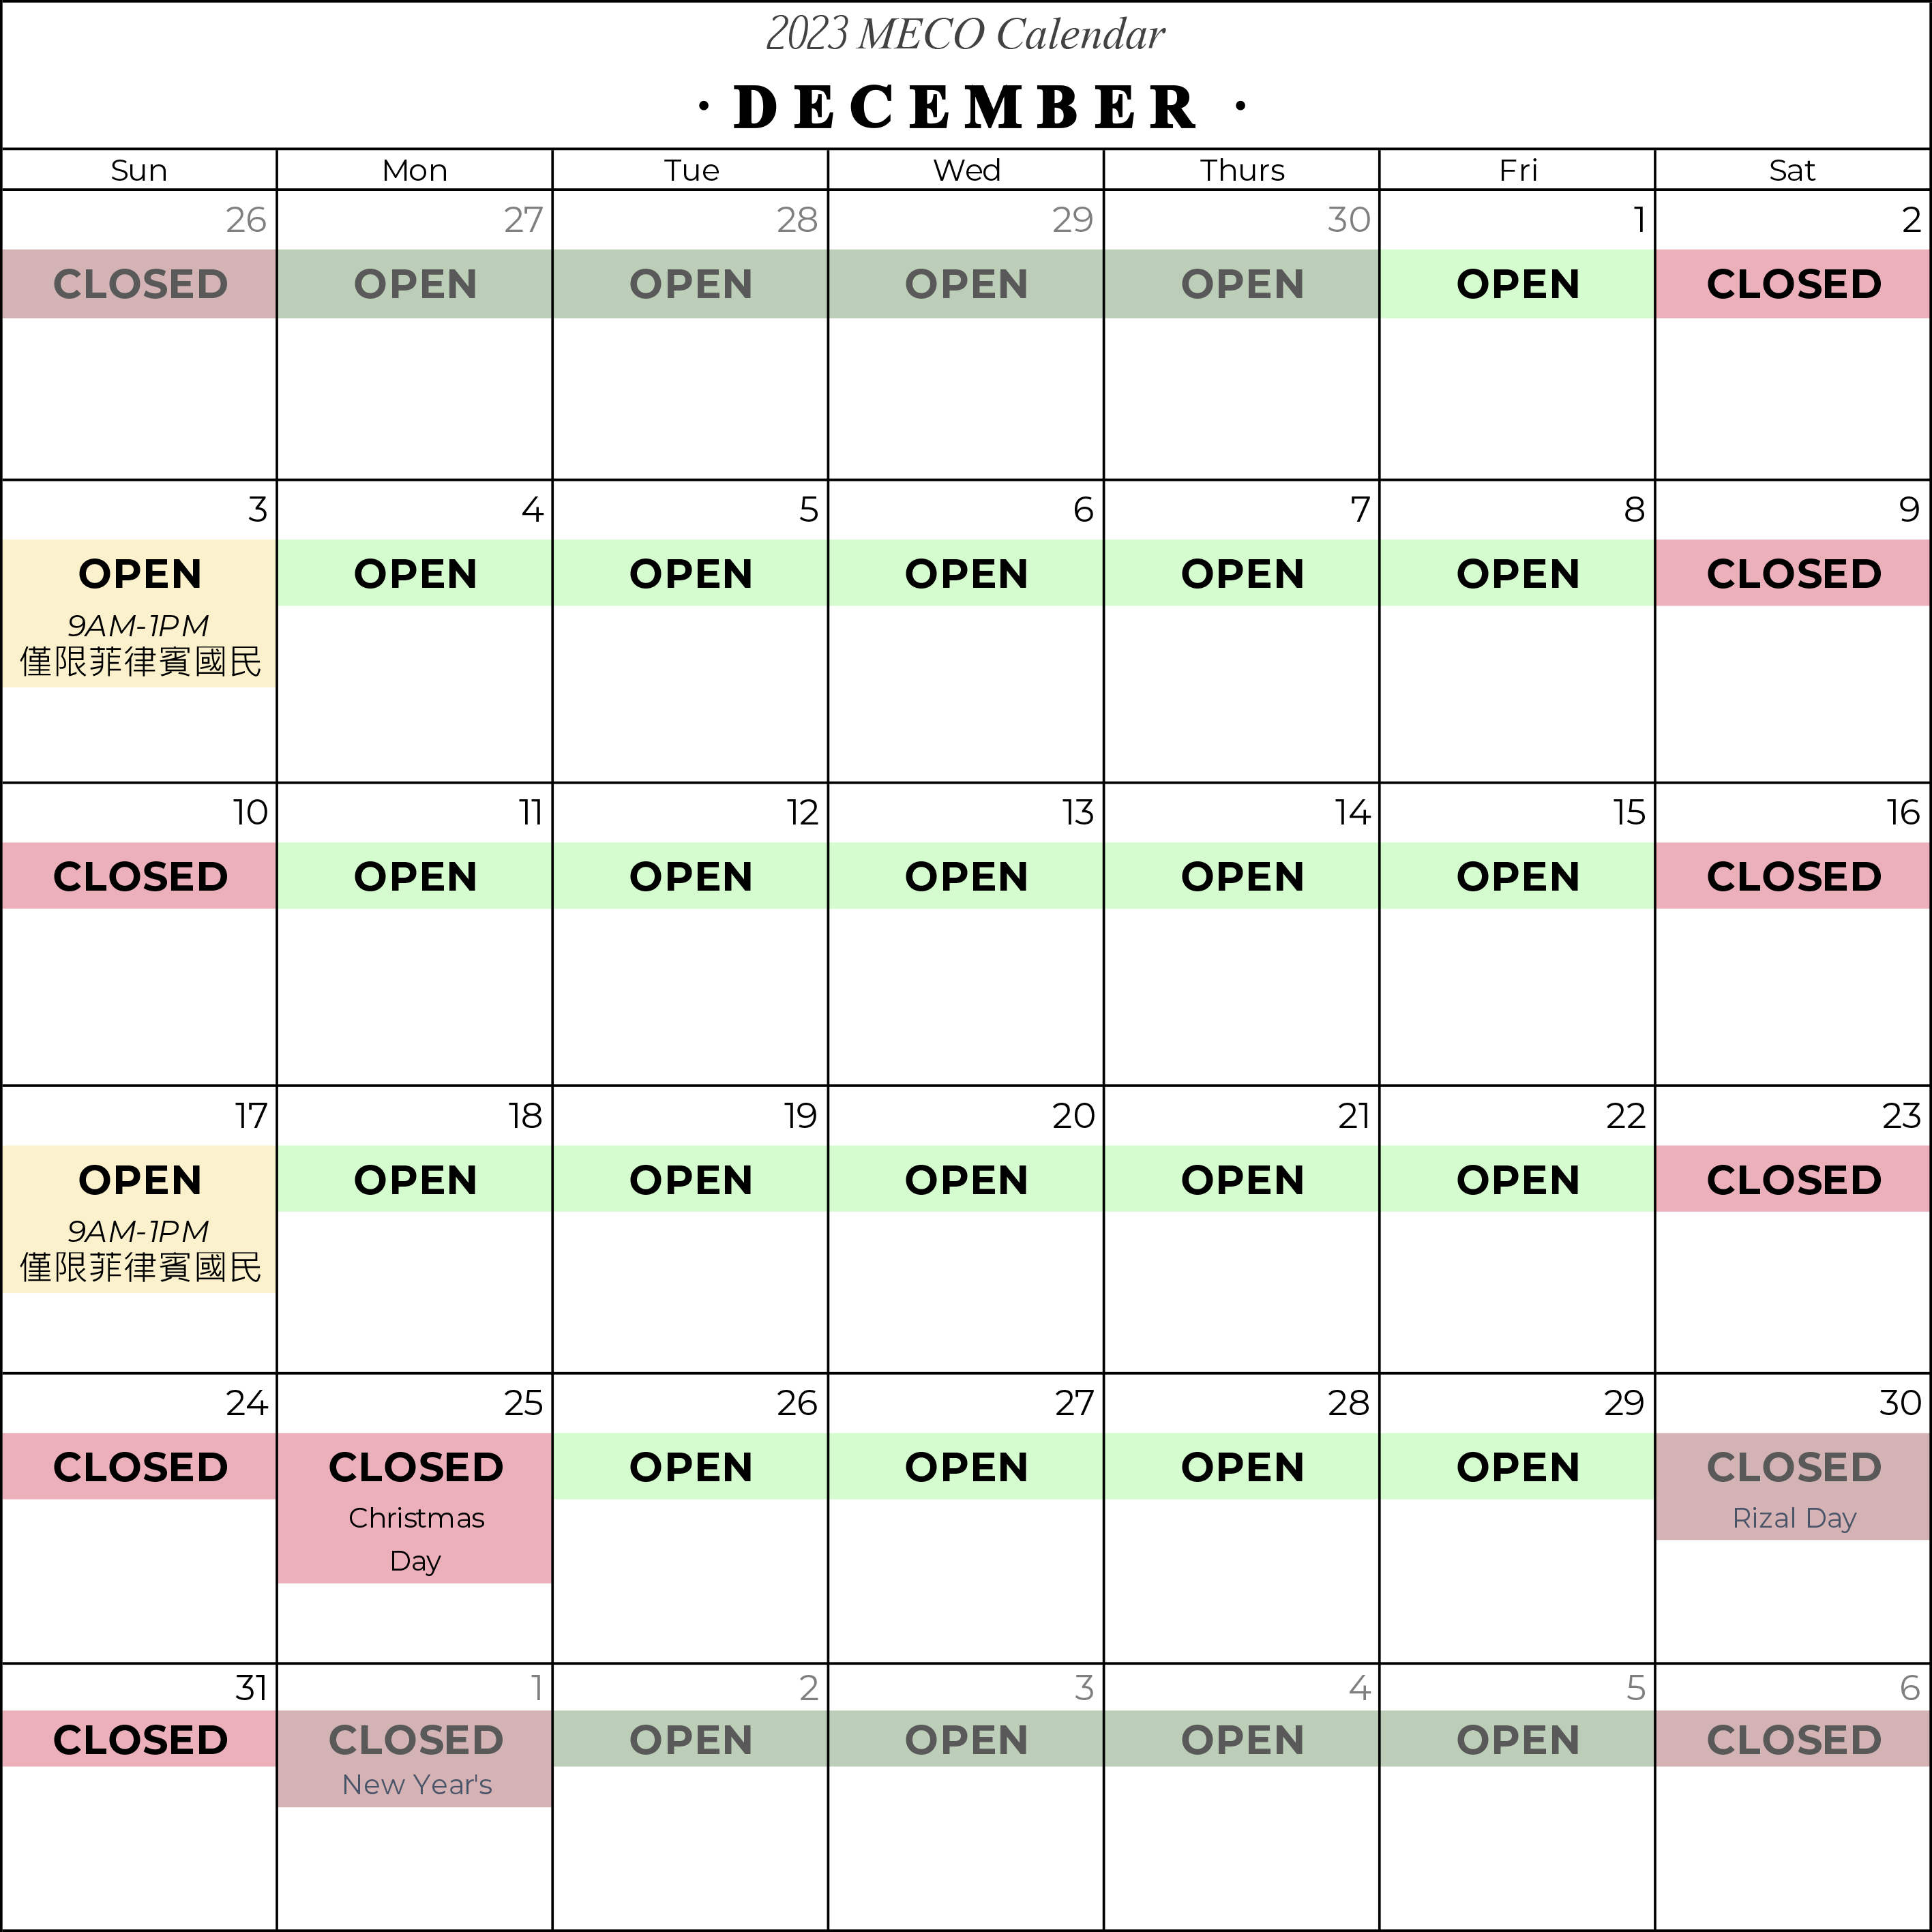 December 2023 Calendar updated.png